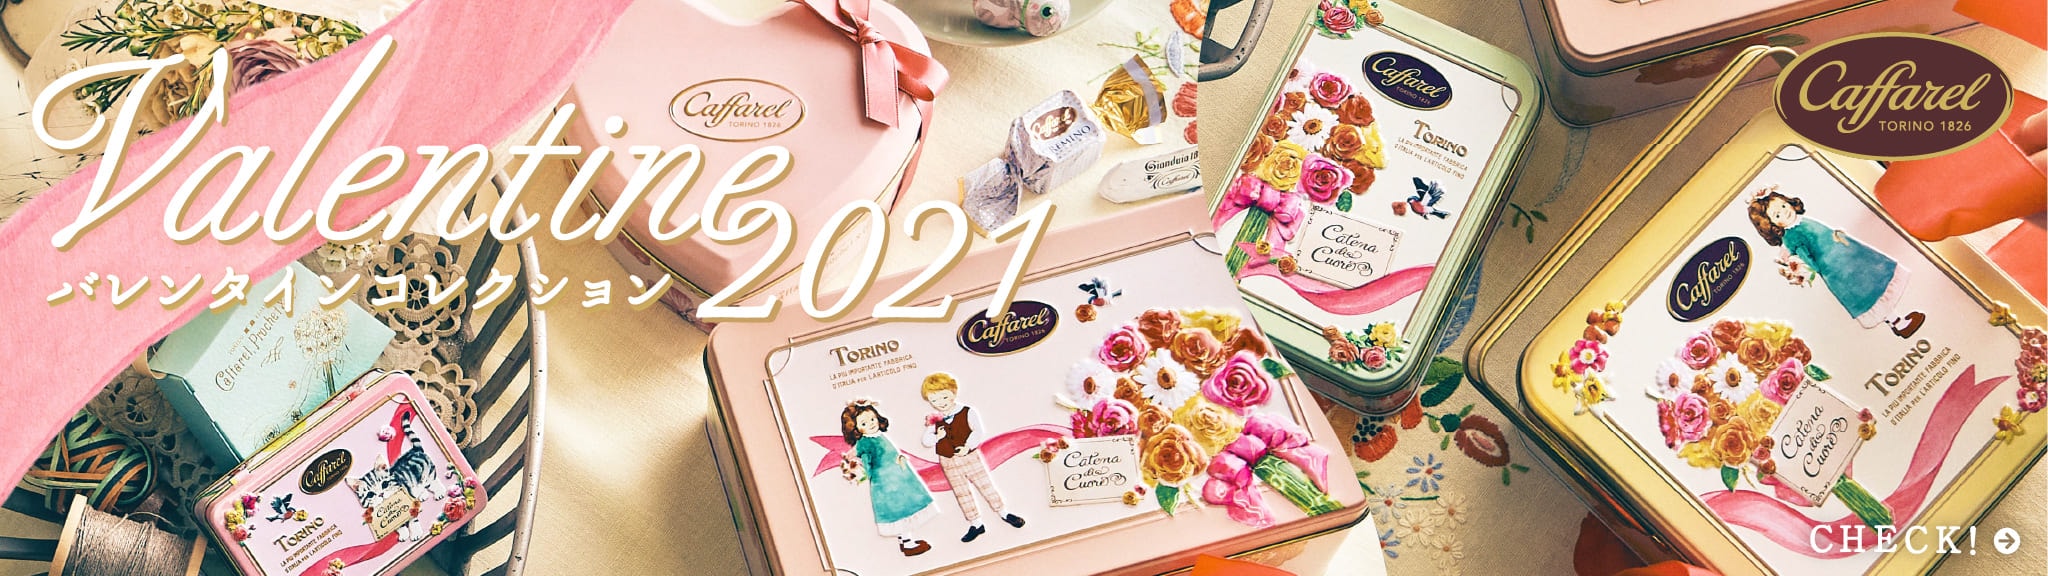 21バレンタインチョコレートギフト一覧 カファレル公式通販 イタリアチョコレートブランド